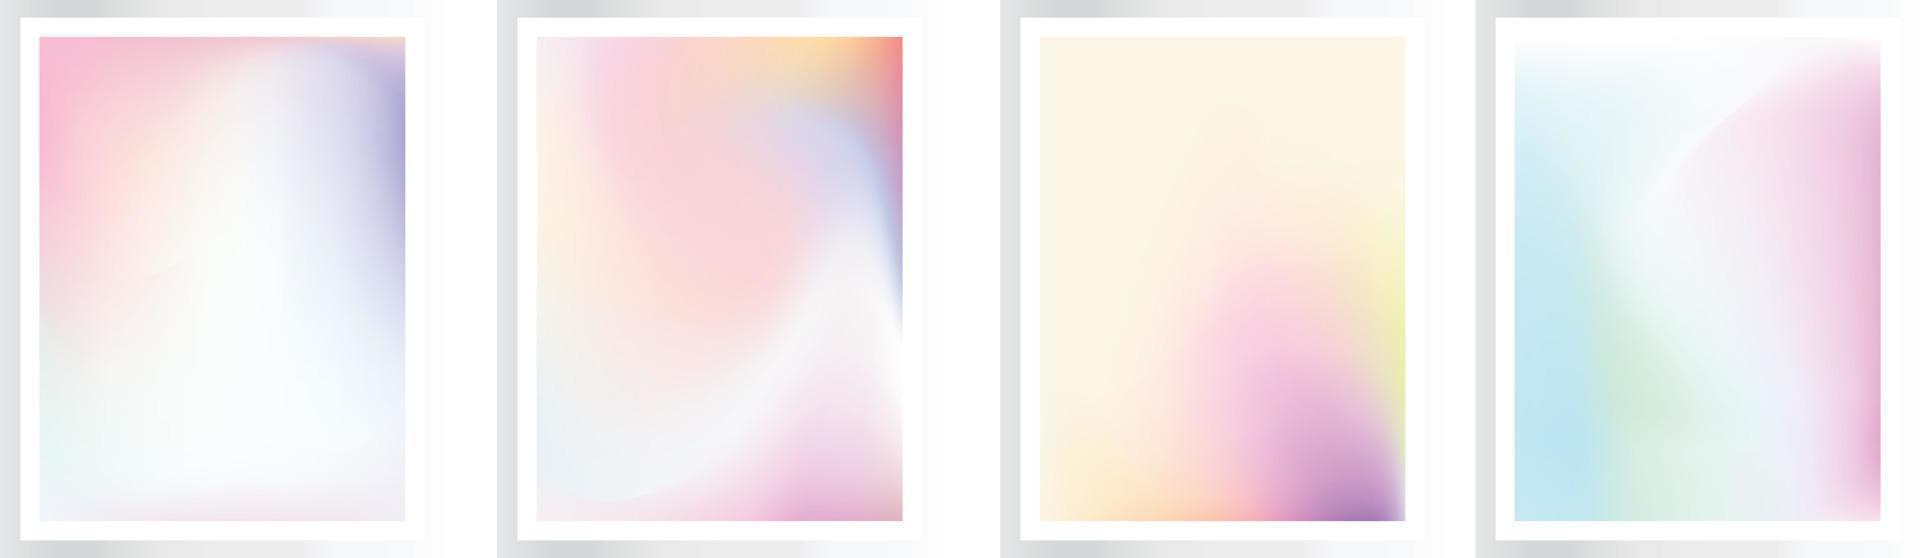 lutning bakgrund uppsättning. mjuk ljus färgrik gul, rosa färger. enkel modern skärm design. vektor illustration, eps fil